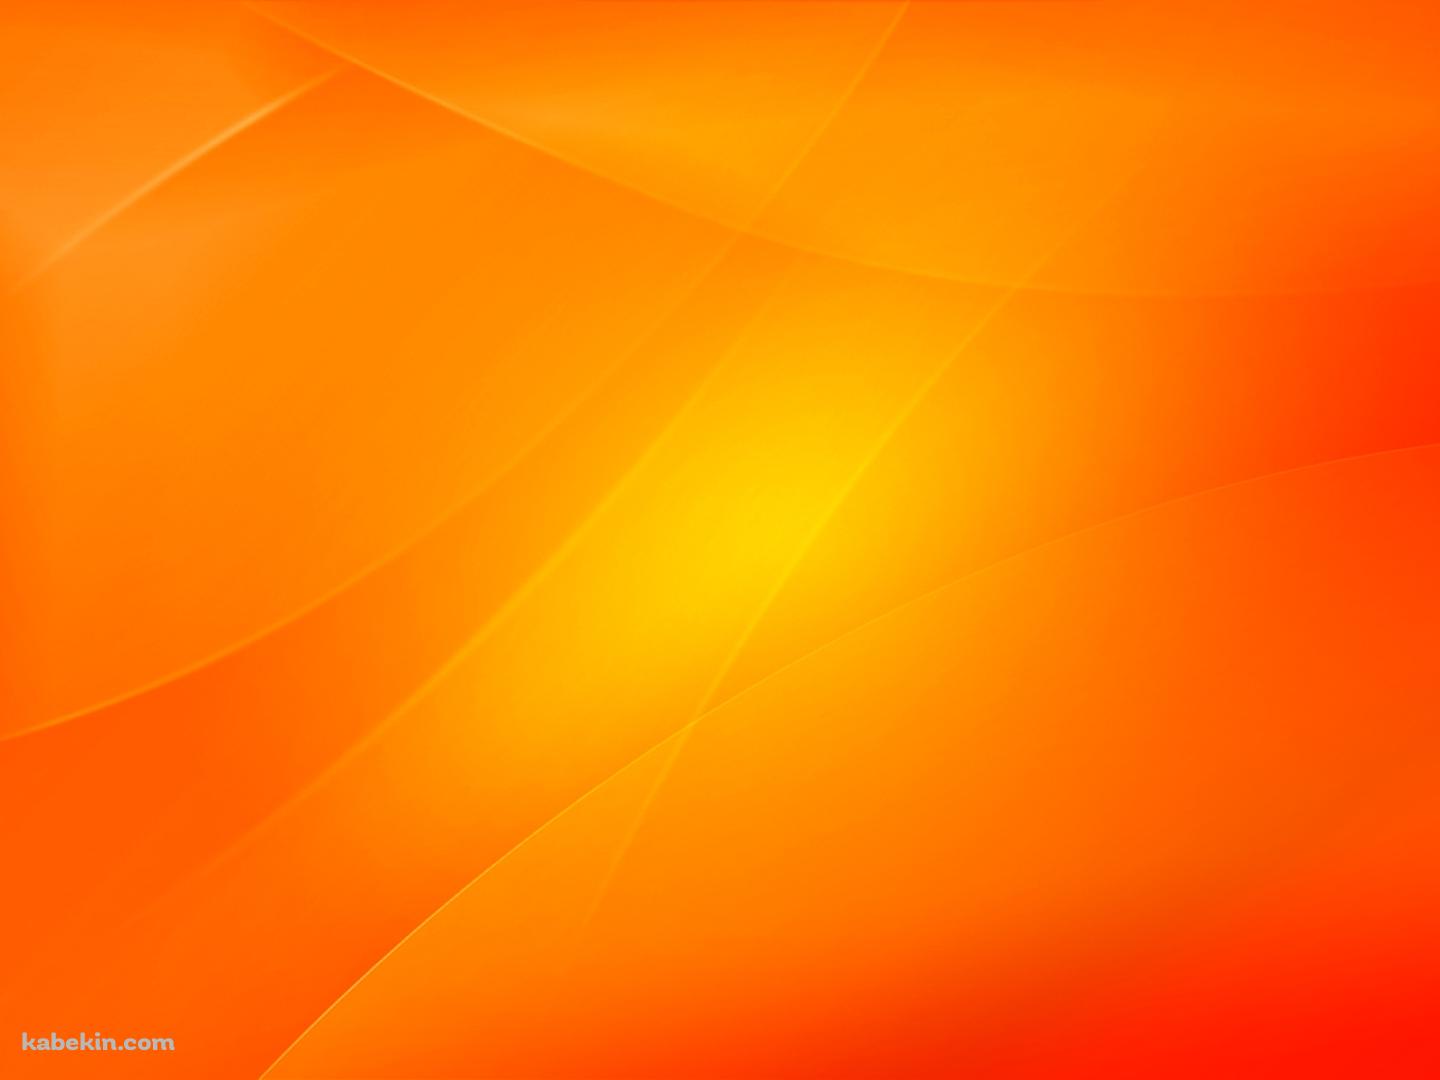 明るいオレンジの壁紙(1440px x 1080px) 高画質 PC・デスクトップ用